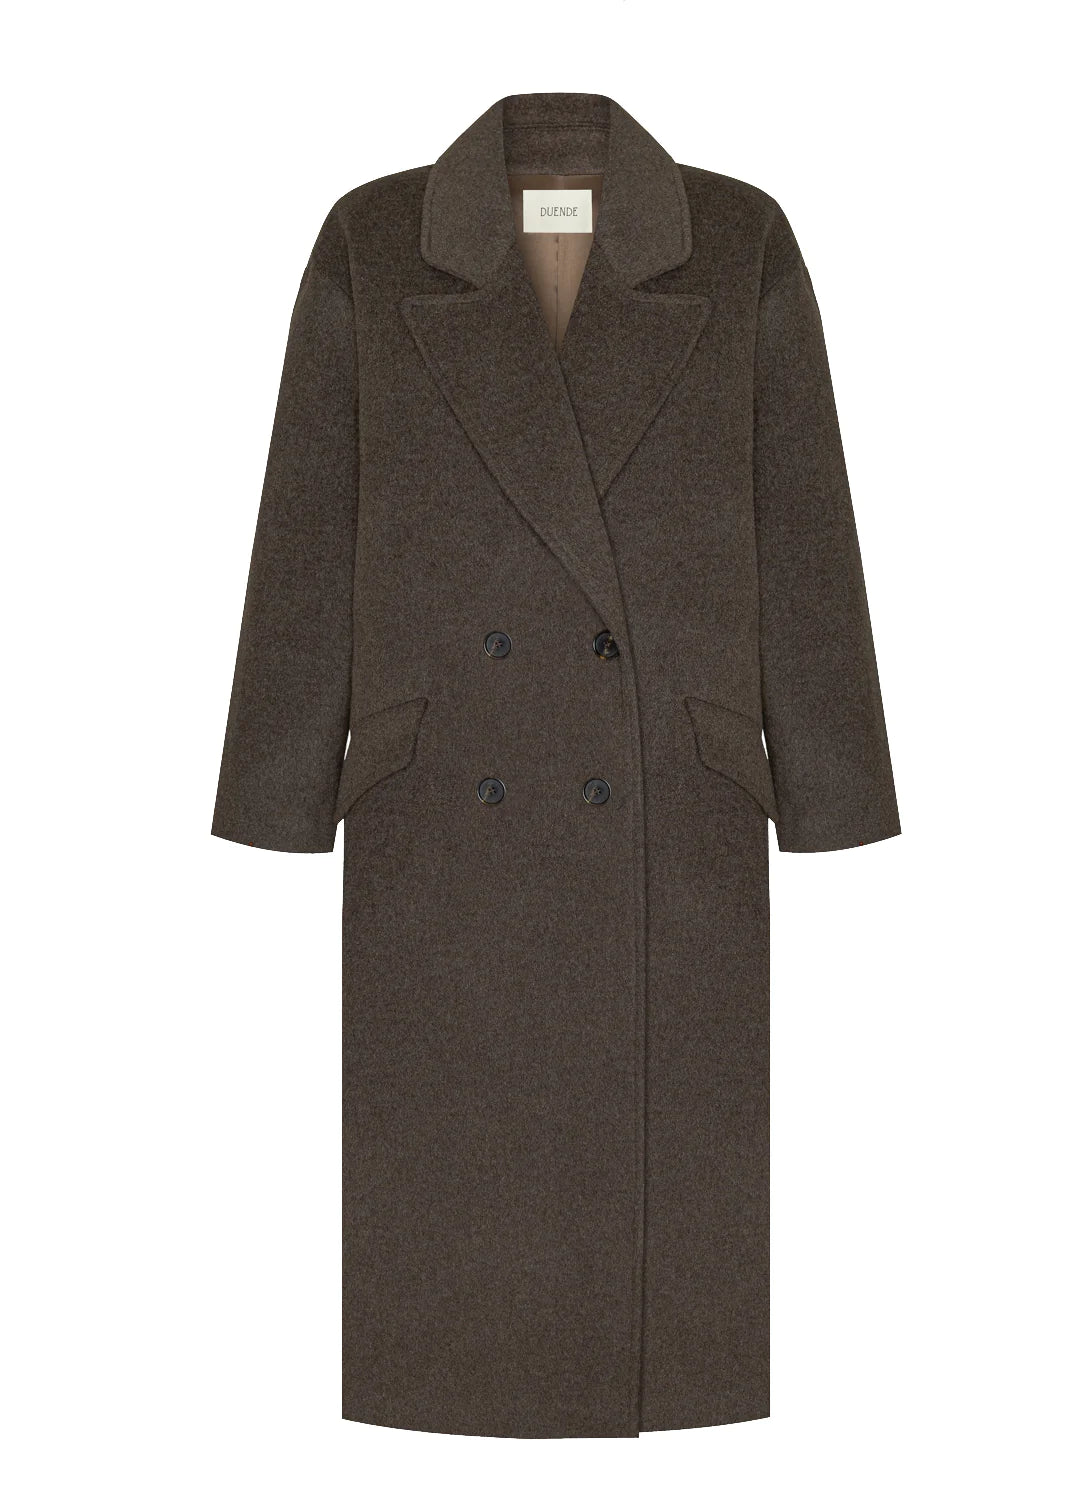 Les Goodies - Duende Joan Brown Coat